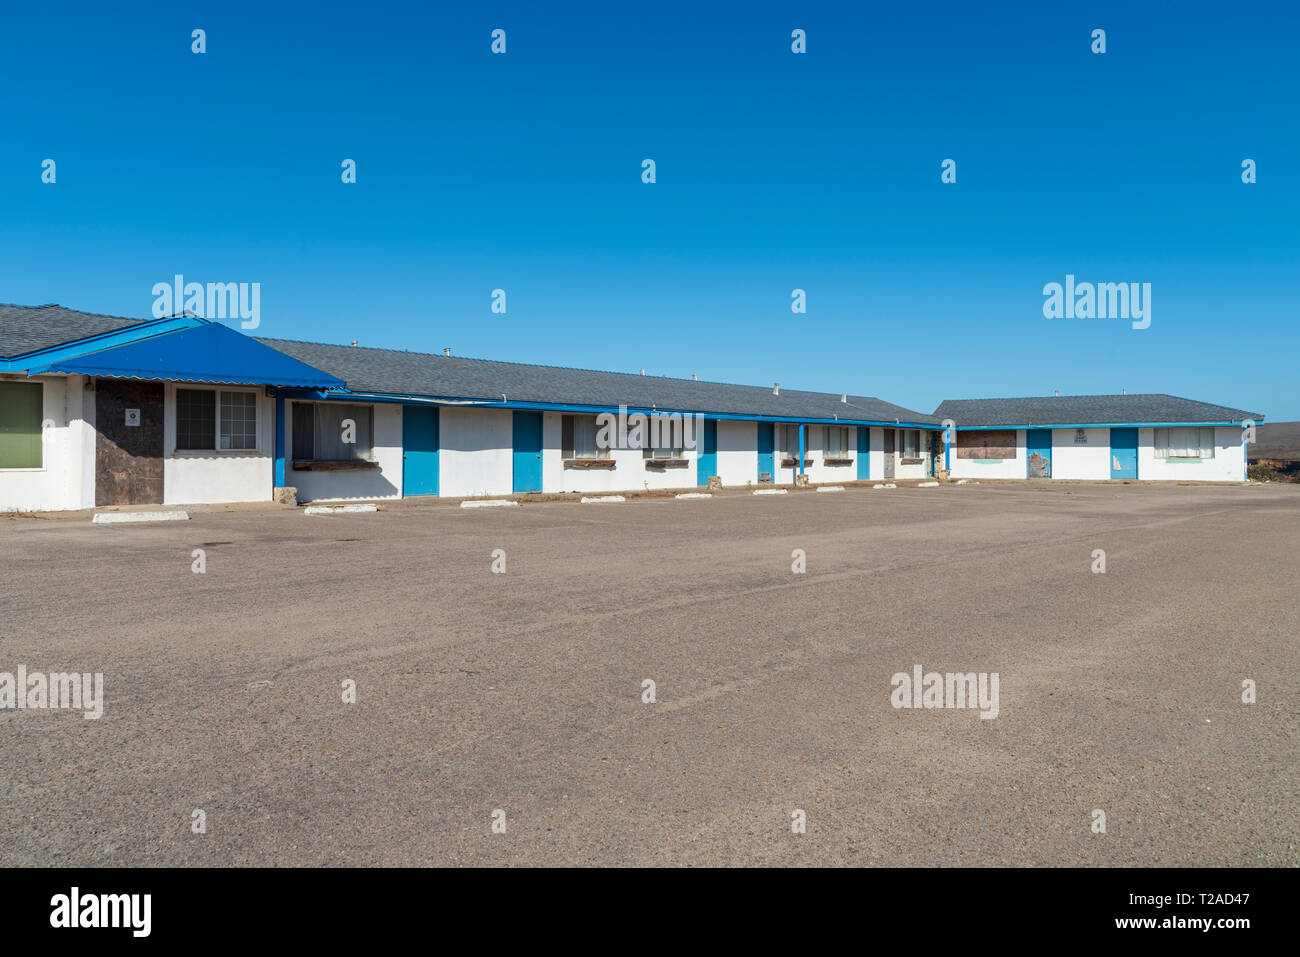 Amplia visión del abandono de motel con ribete azul y paredes blancas bajo el brillante cielo azul. Estacionamiento pavimentado. Foto de stock